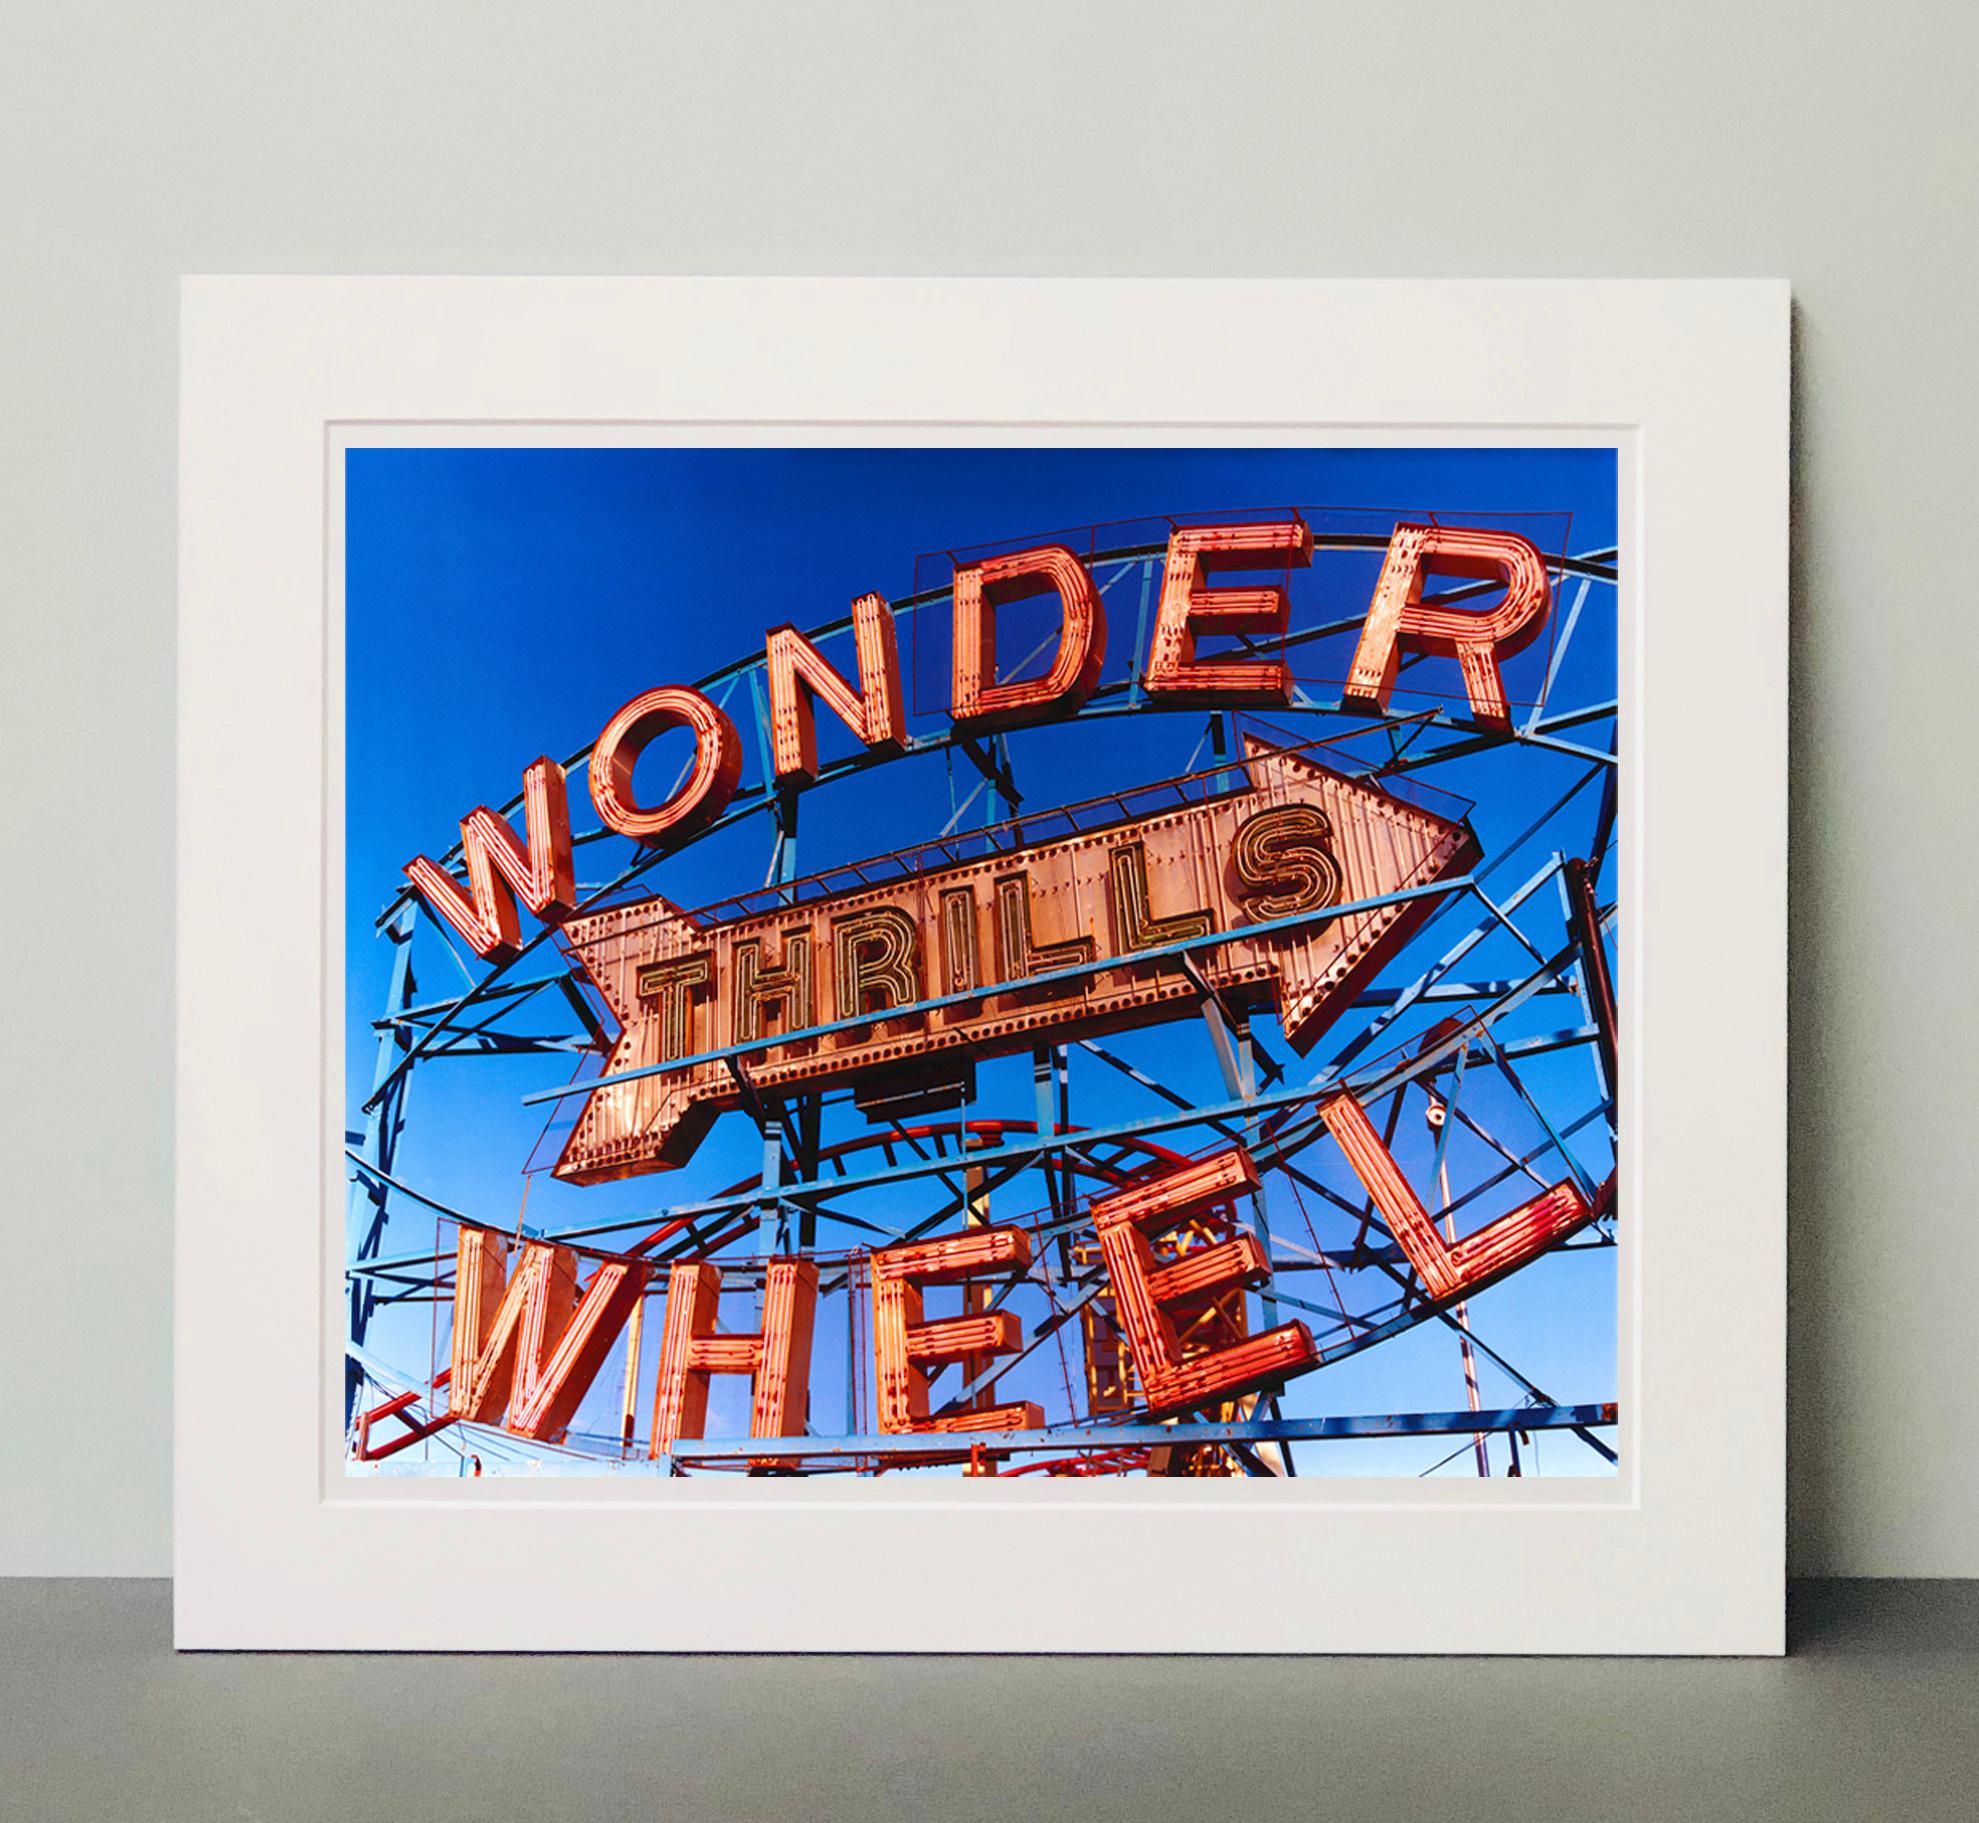 Thrills, Coney Island, New York – Architektur-Farbfotografie der Pop Art (Pop-Art), Print, von Richard Heeps